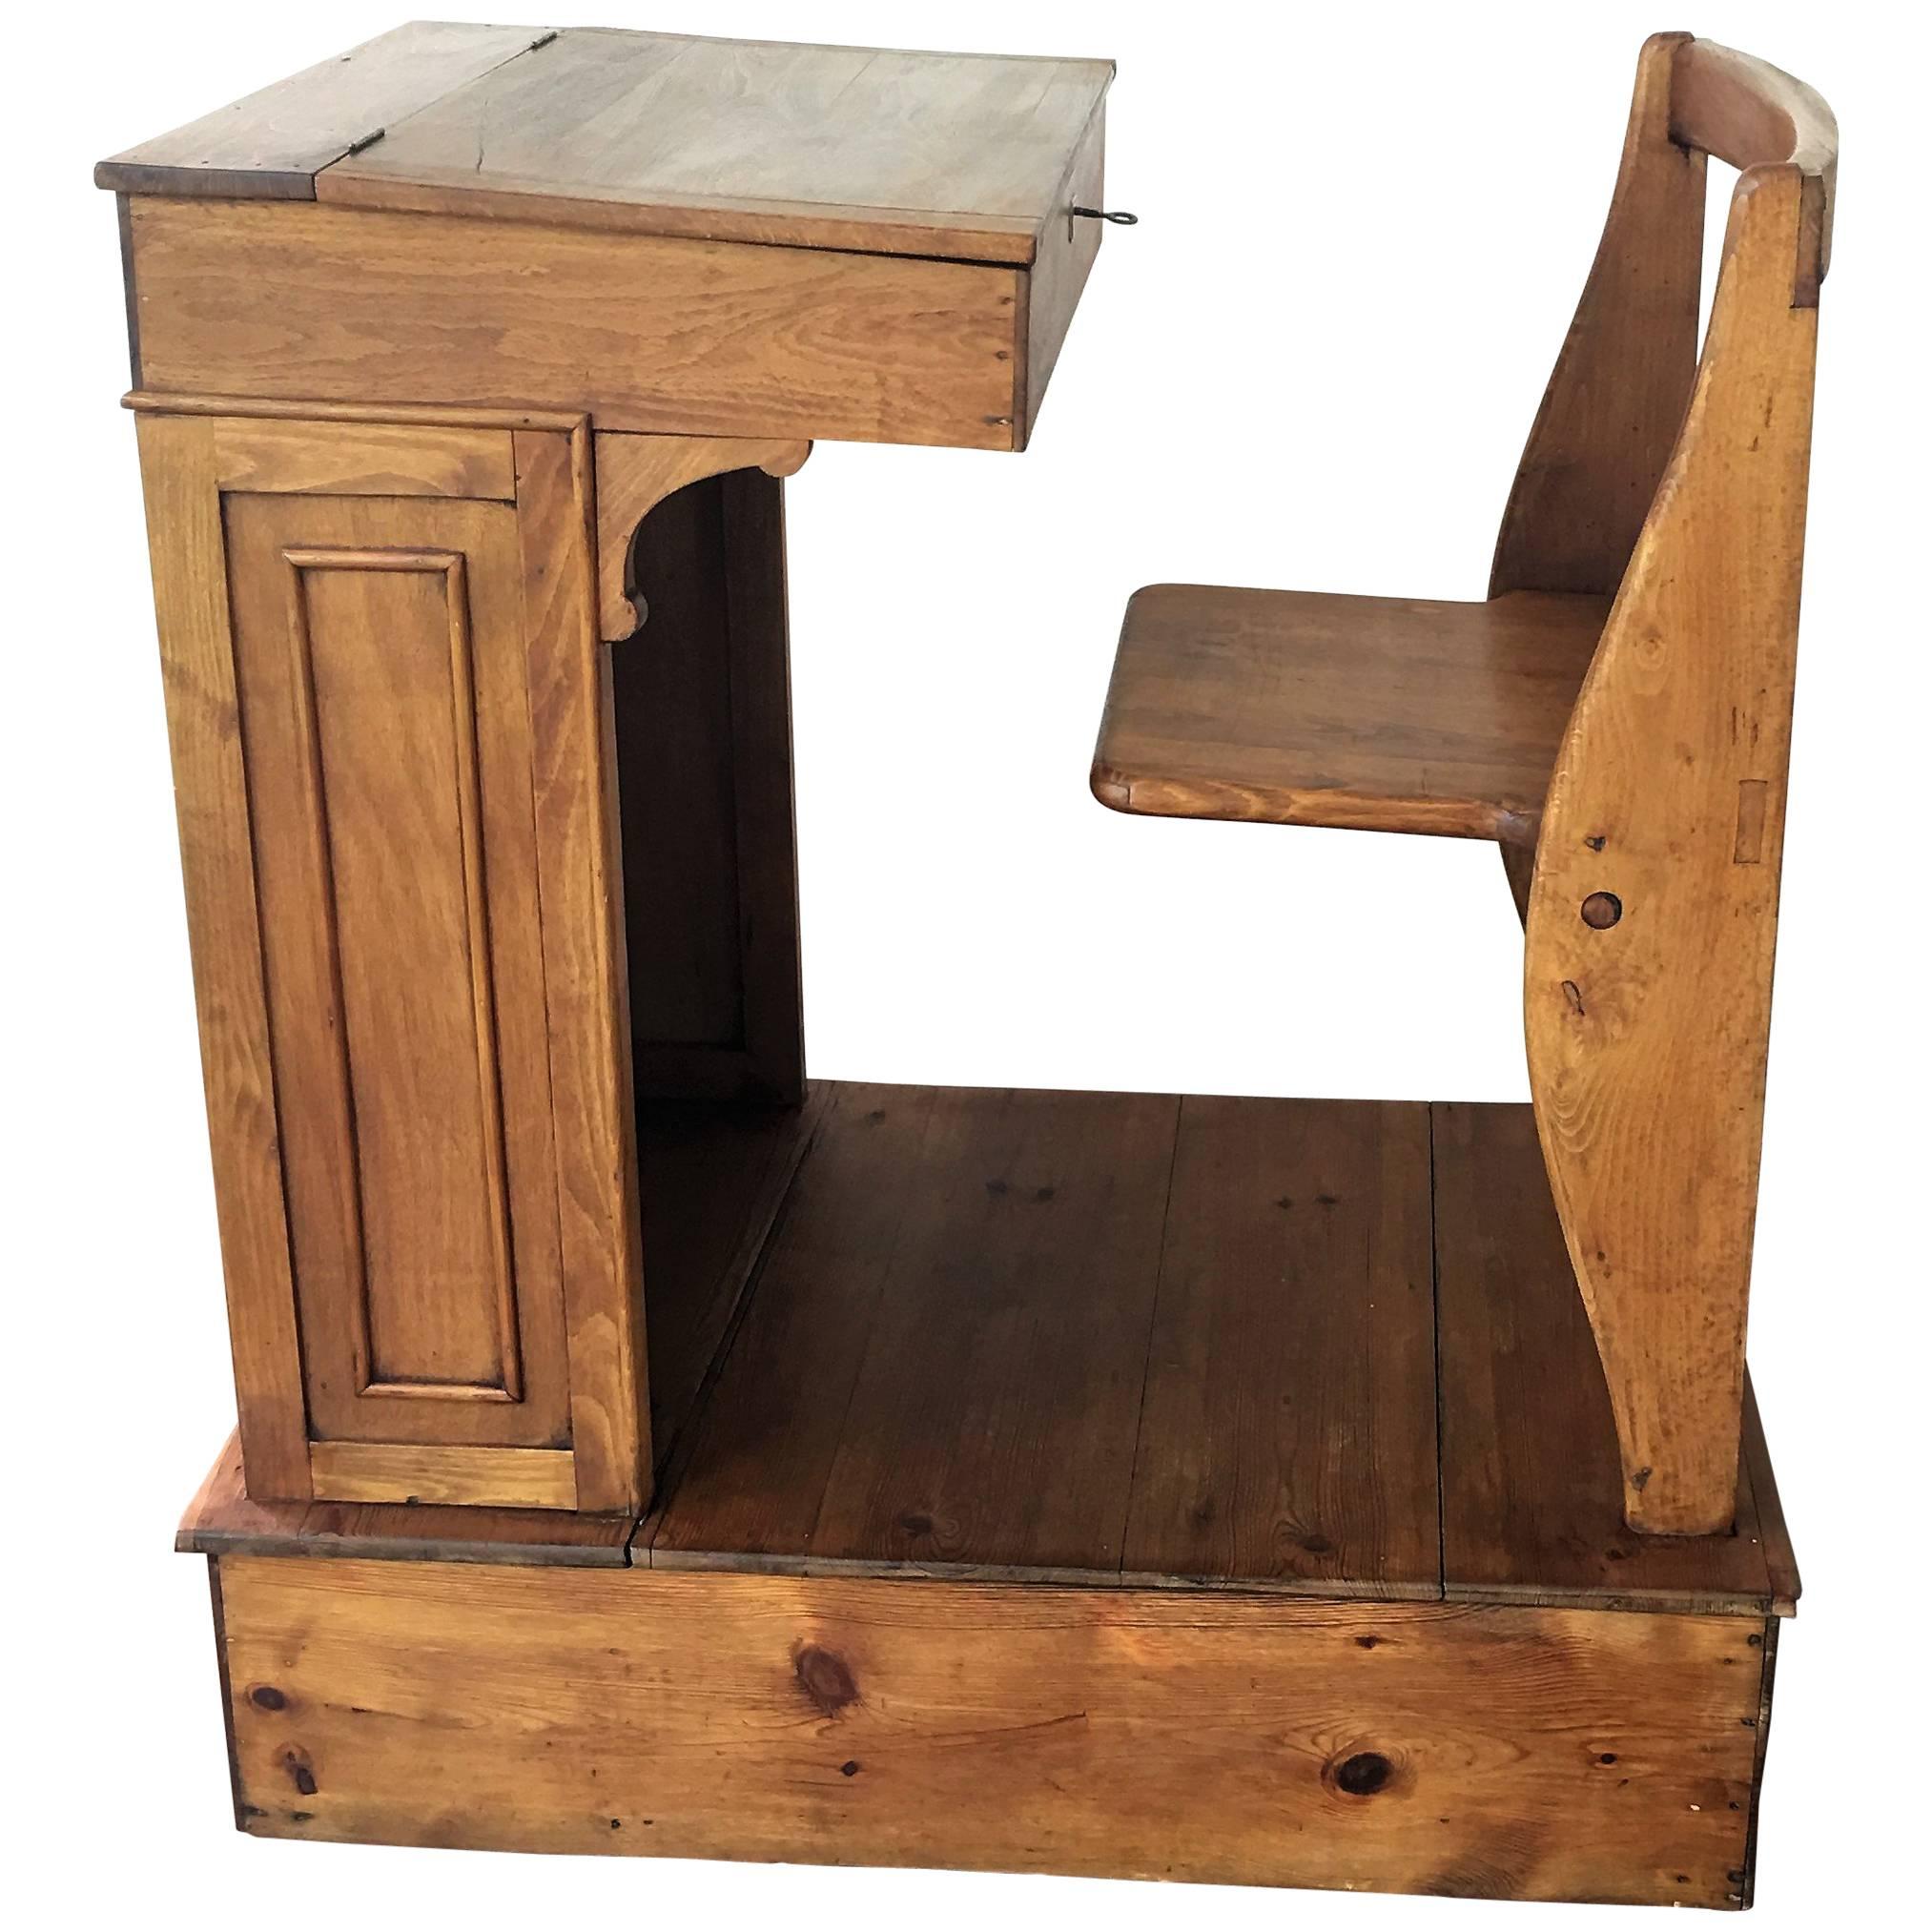 Base height: 9 in

1940s children's adjustable Spanish school desk in wood.